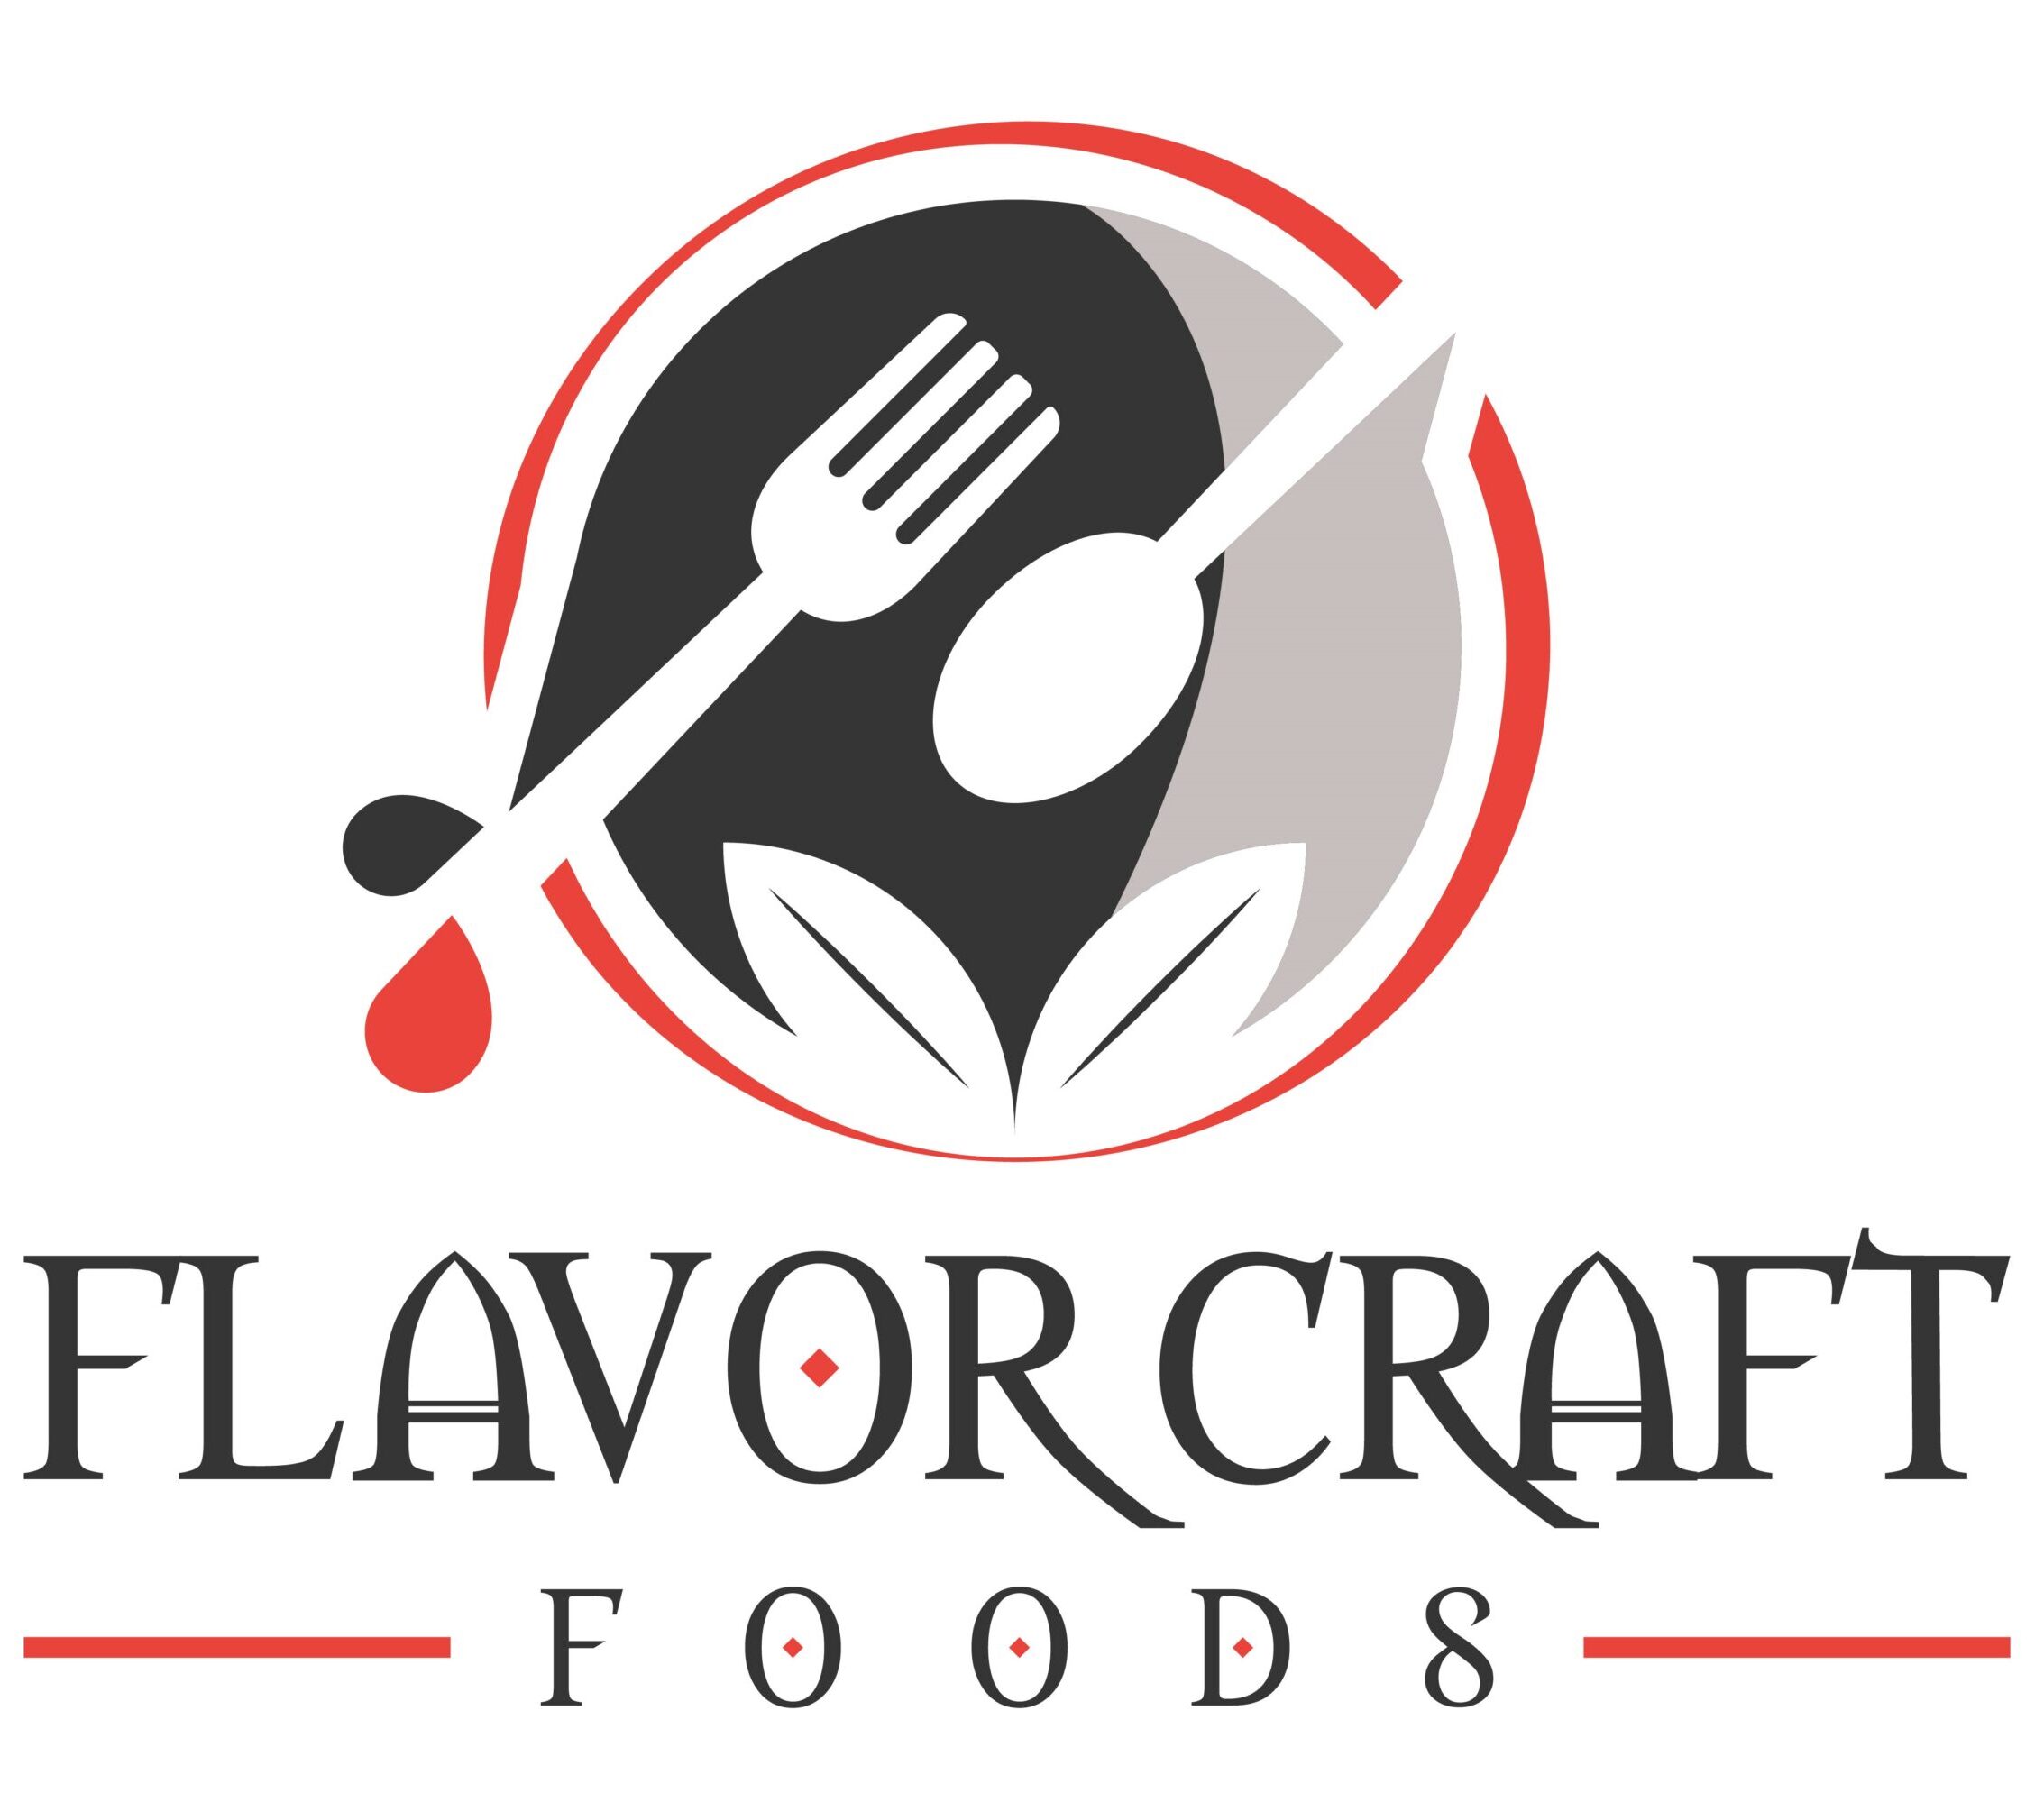 Flavor Craft Foods